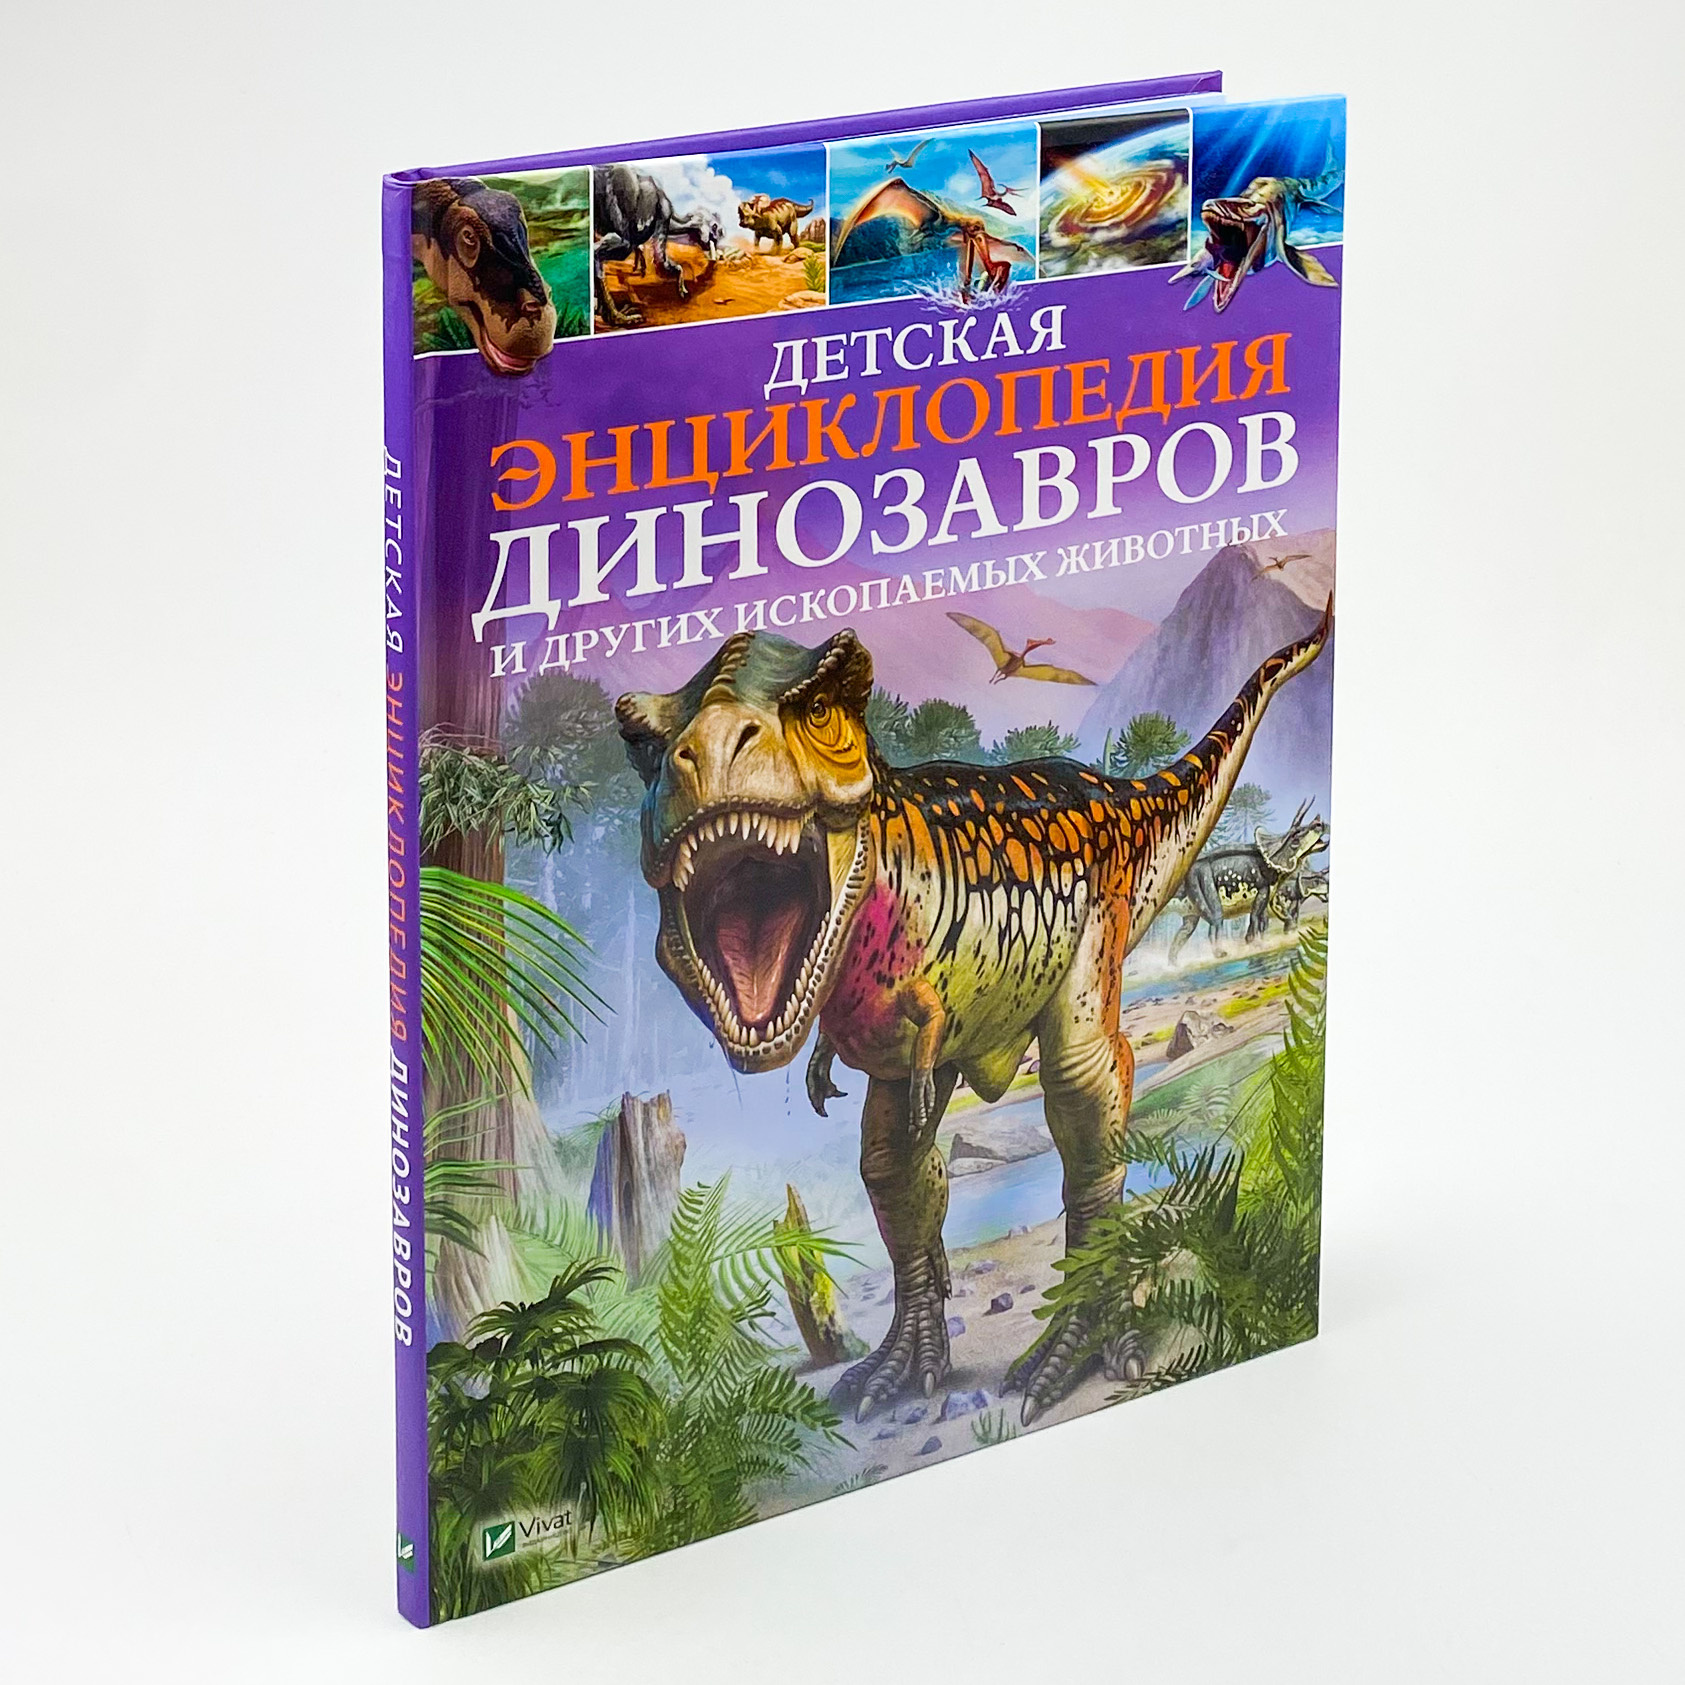 Детская энциклопедия динозавров и других ископаемых животных. Автор — Клер Гібберт. 